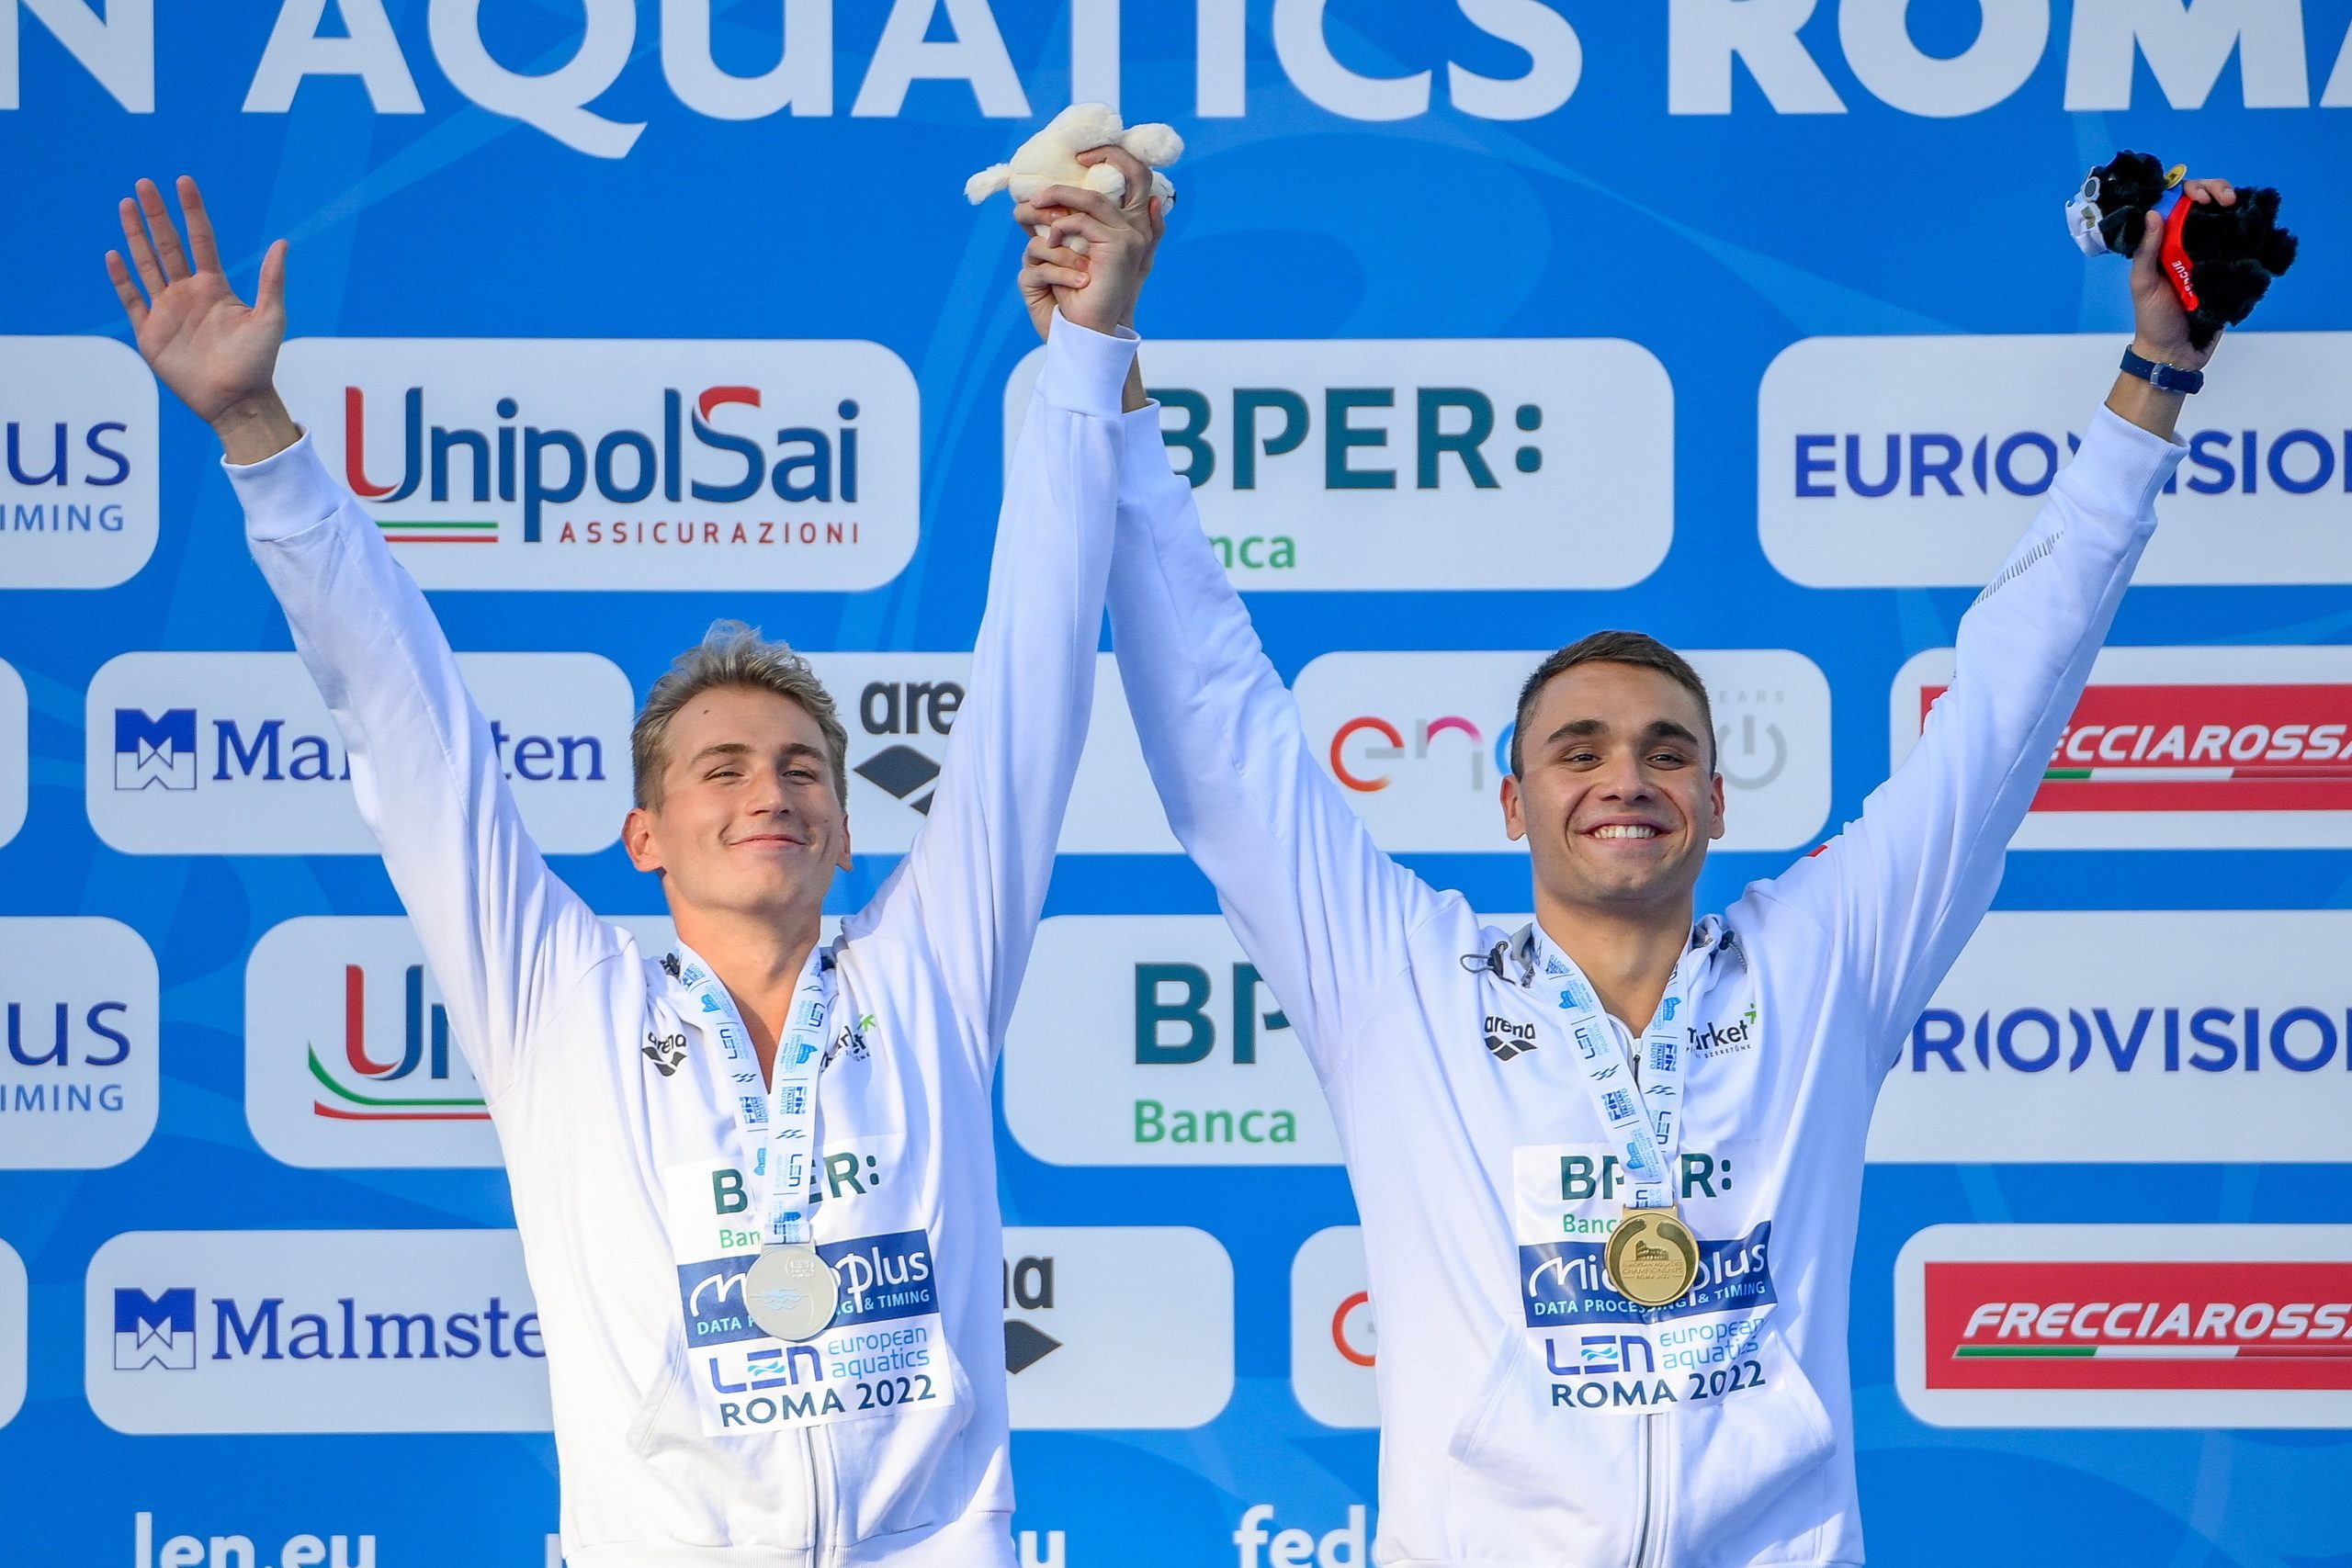 Schwimm-EM: Goldmedaille für Kristóf Milák in 200 Schmetterling, Richárd Márton wurde Zweiter